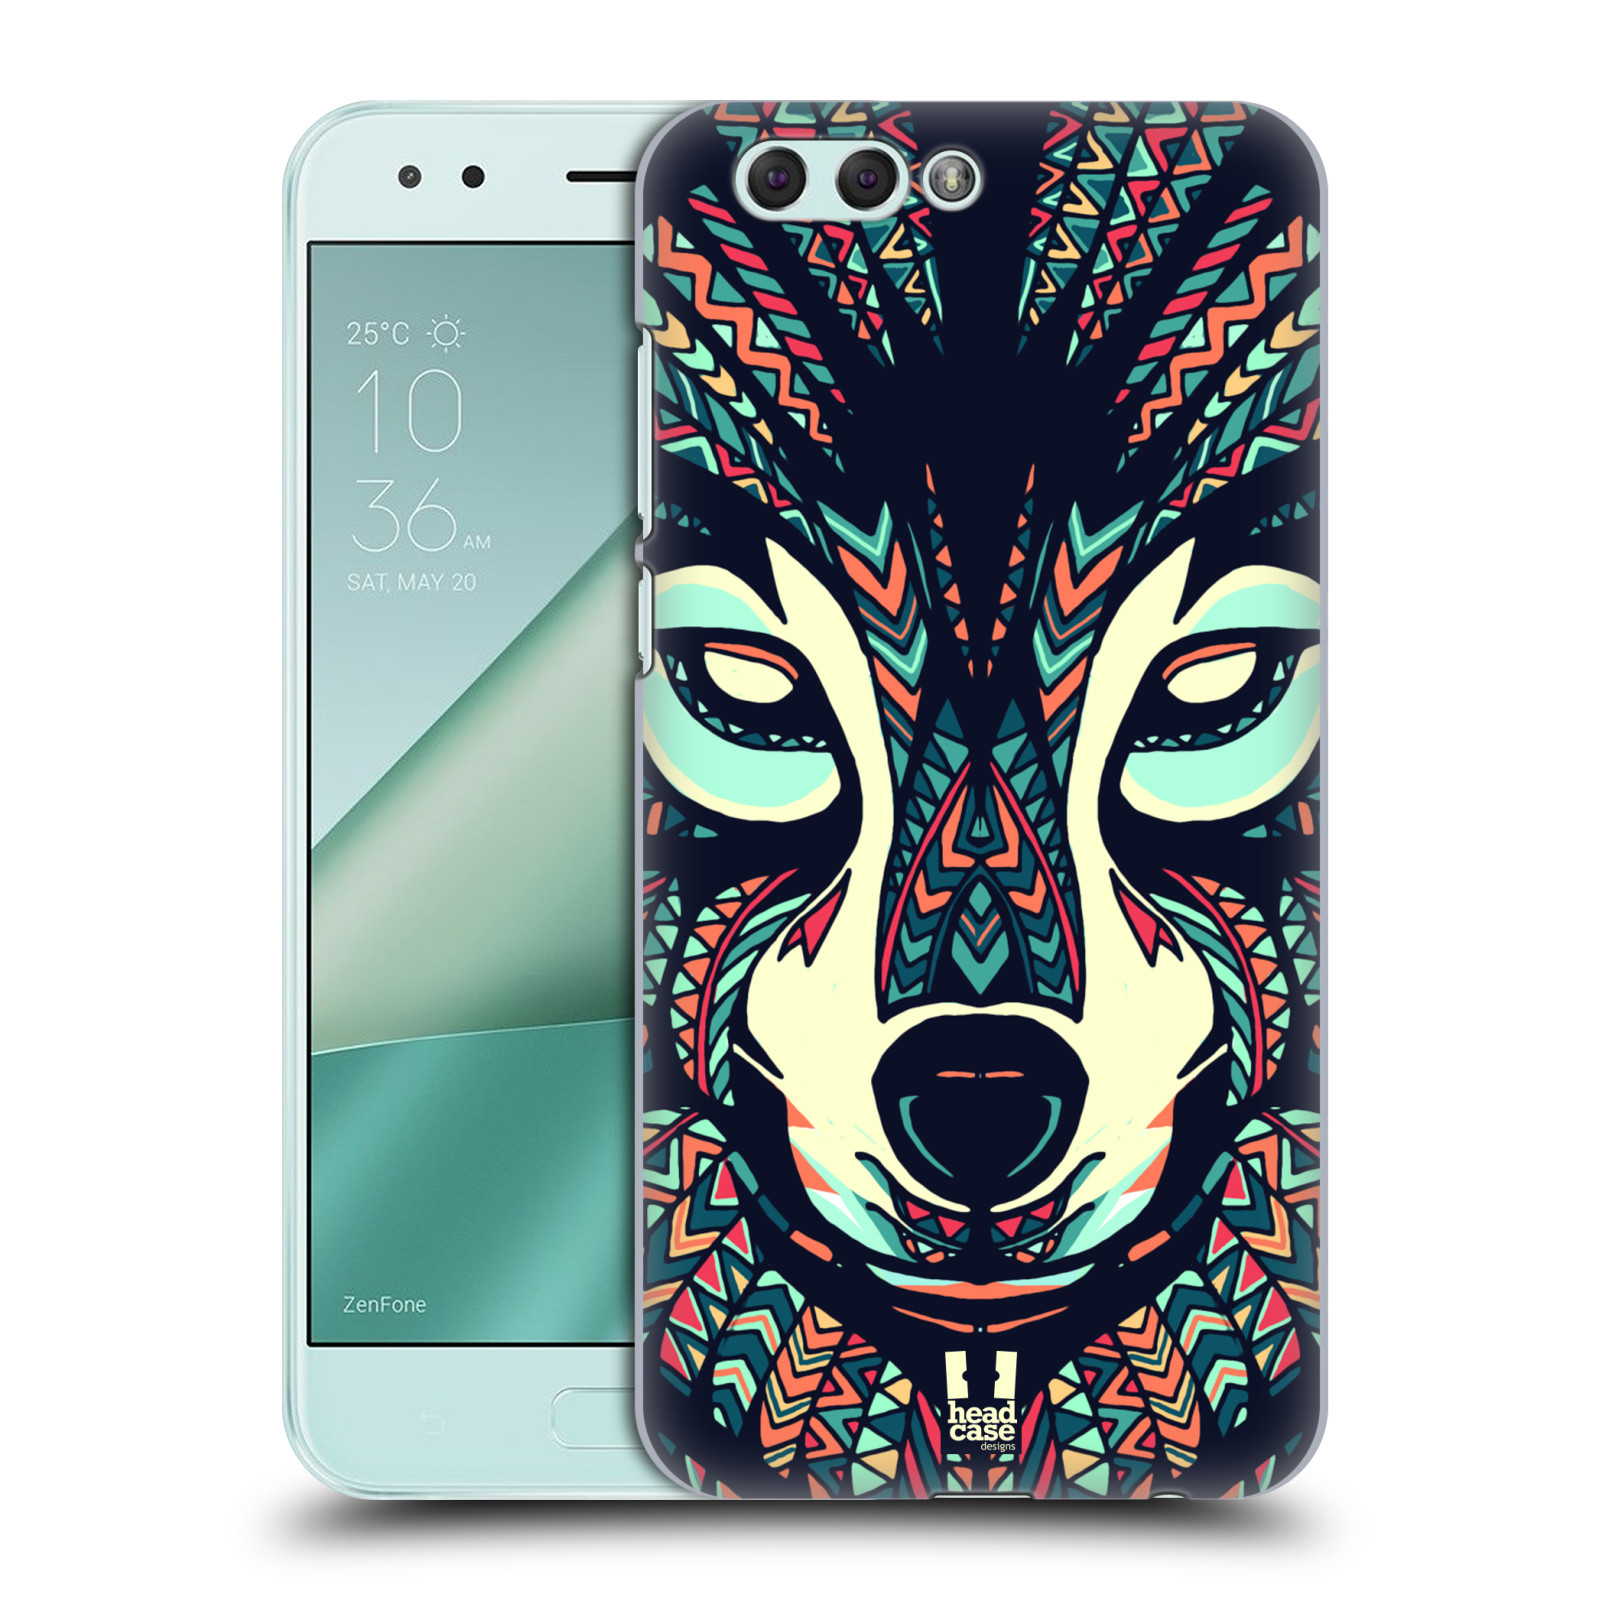 HEAD CASE plastový obal na mobil Asus Zenfone 4 ZE554KL vzor Aztécký motiv zvíře 3 vlk